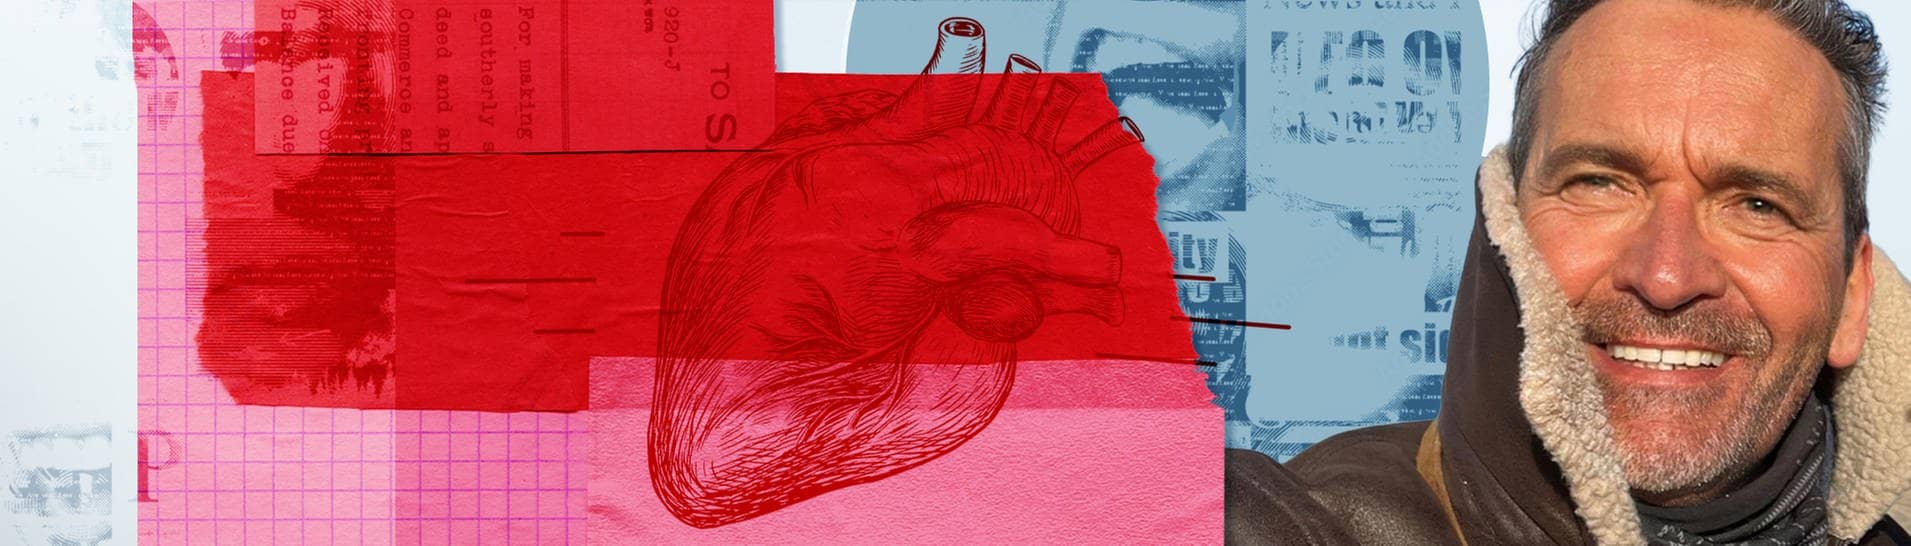 Mann mit grauem Stoppelbart vor Collage aus medizinischen Zeichnungen, die sein Herztransplantat symbolisieren